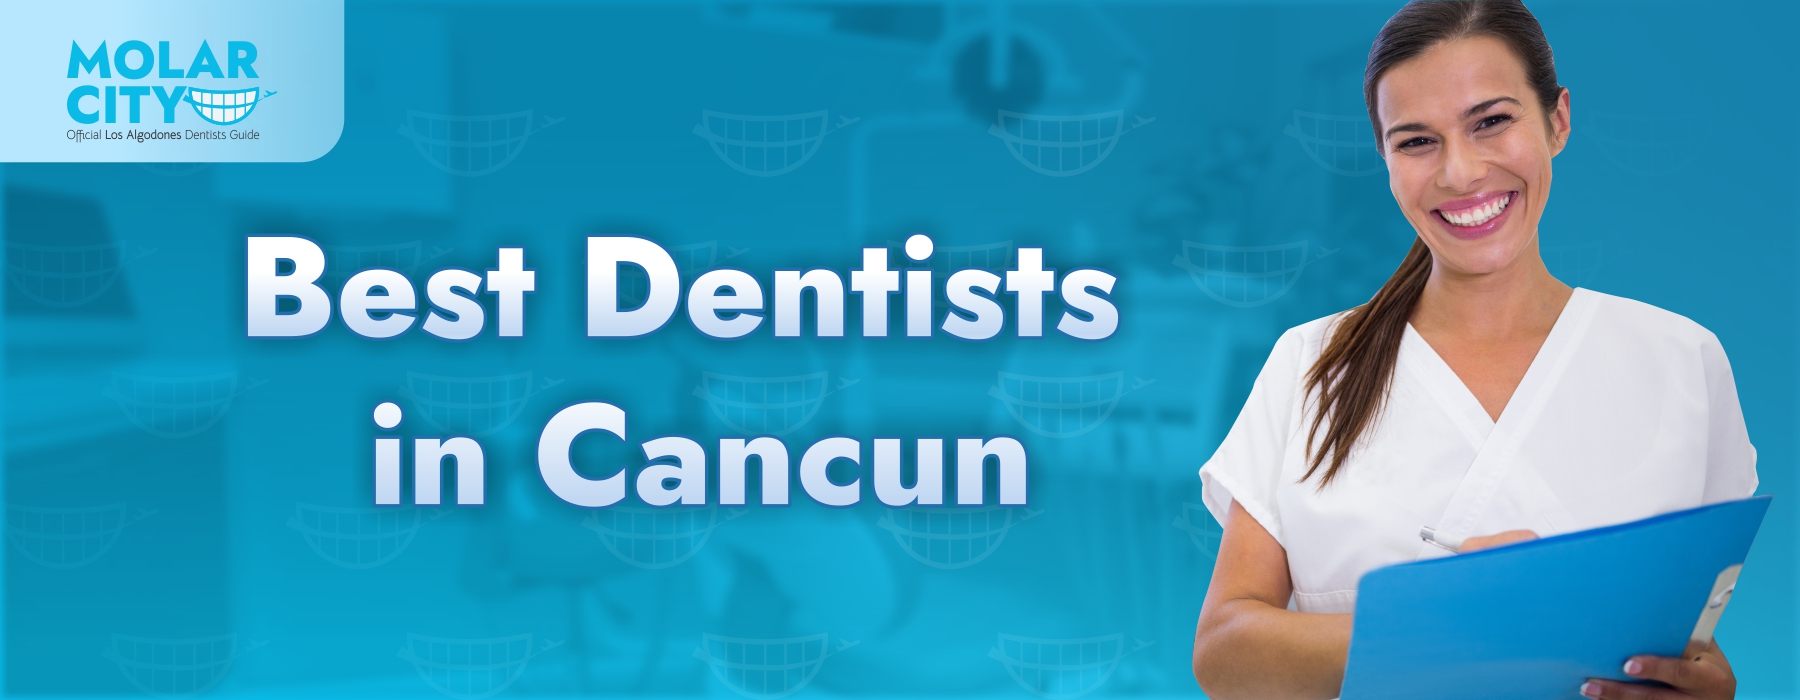 Best Dentists in Cancun